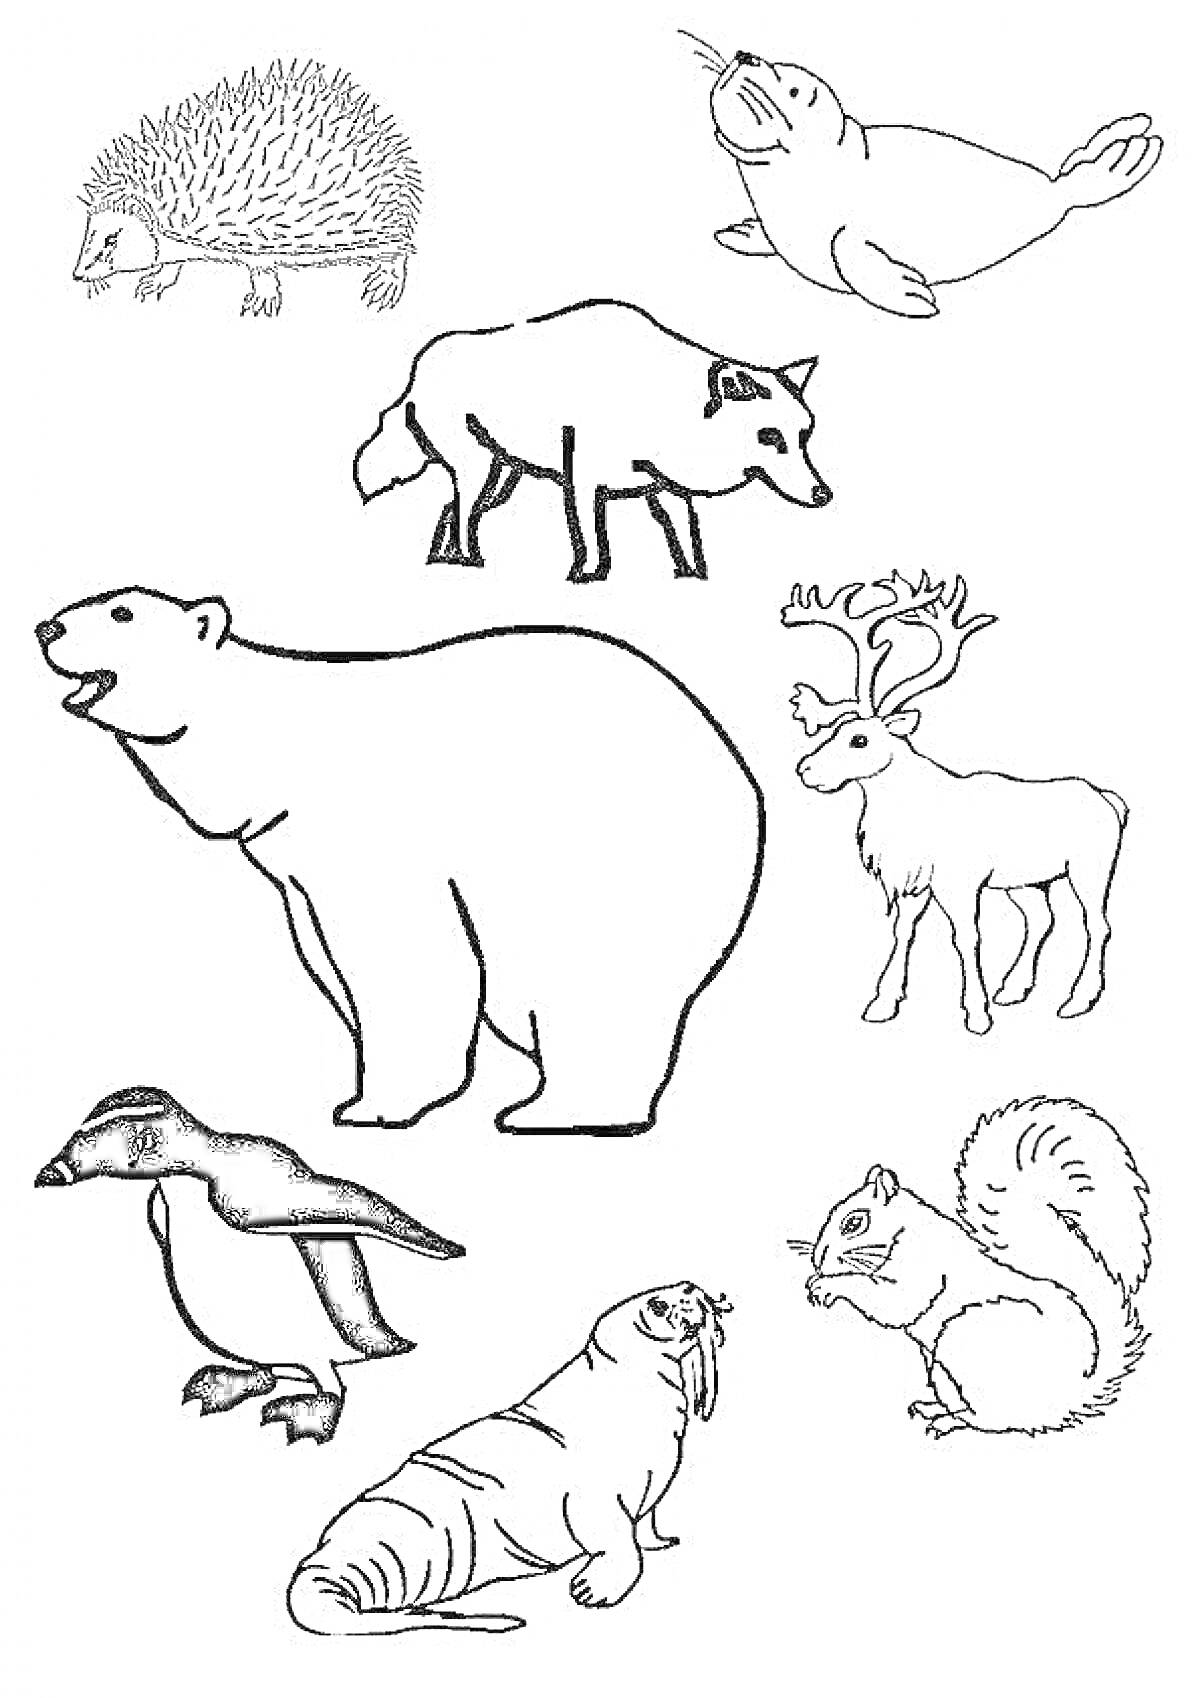 Раскраска Раскраска животных Севера с изображением ёжика, тюленя, волка, белого медведя, северного оленя, пингвина, моржа и белки